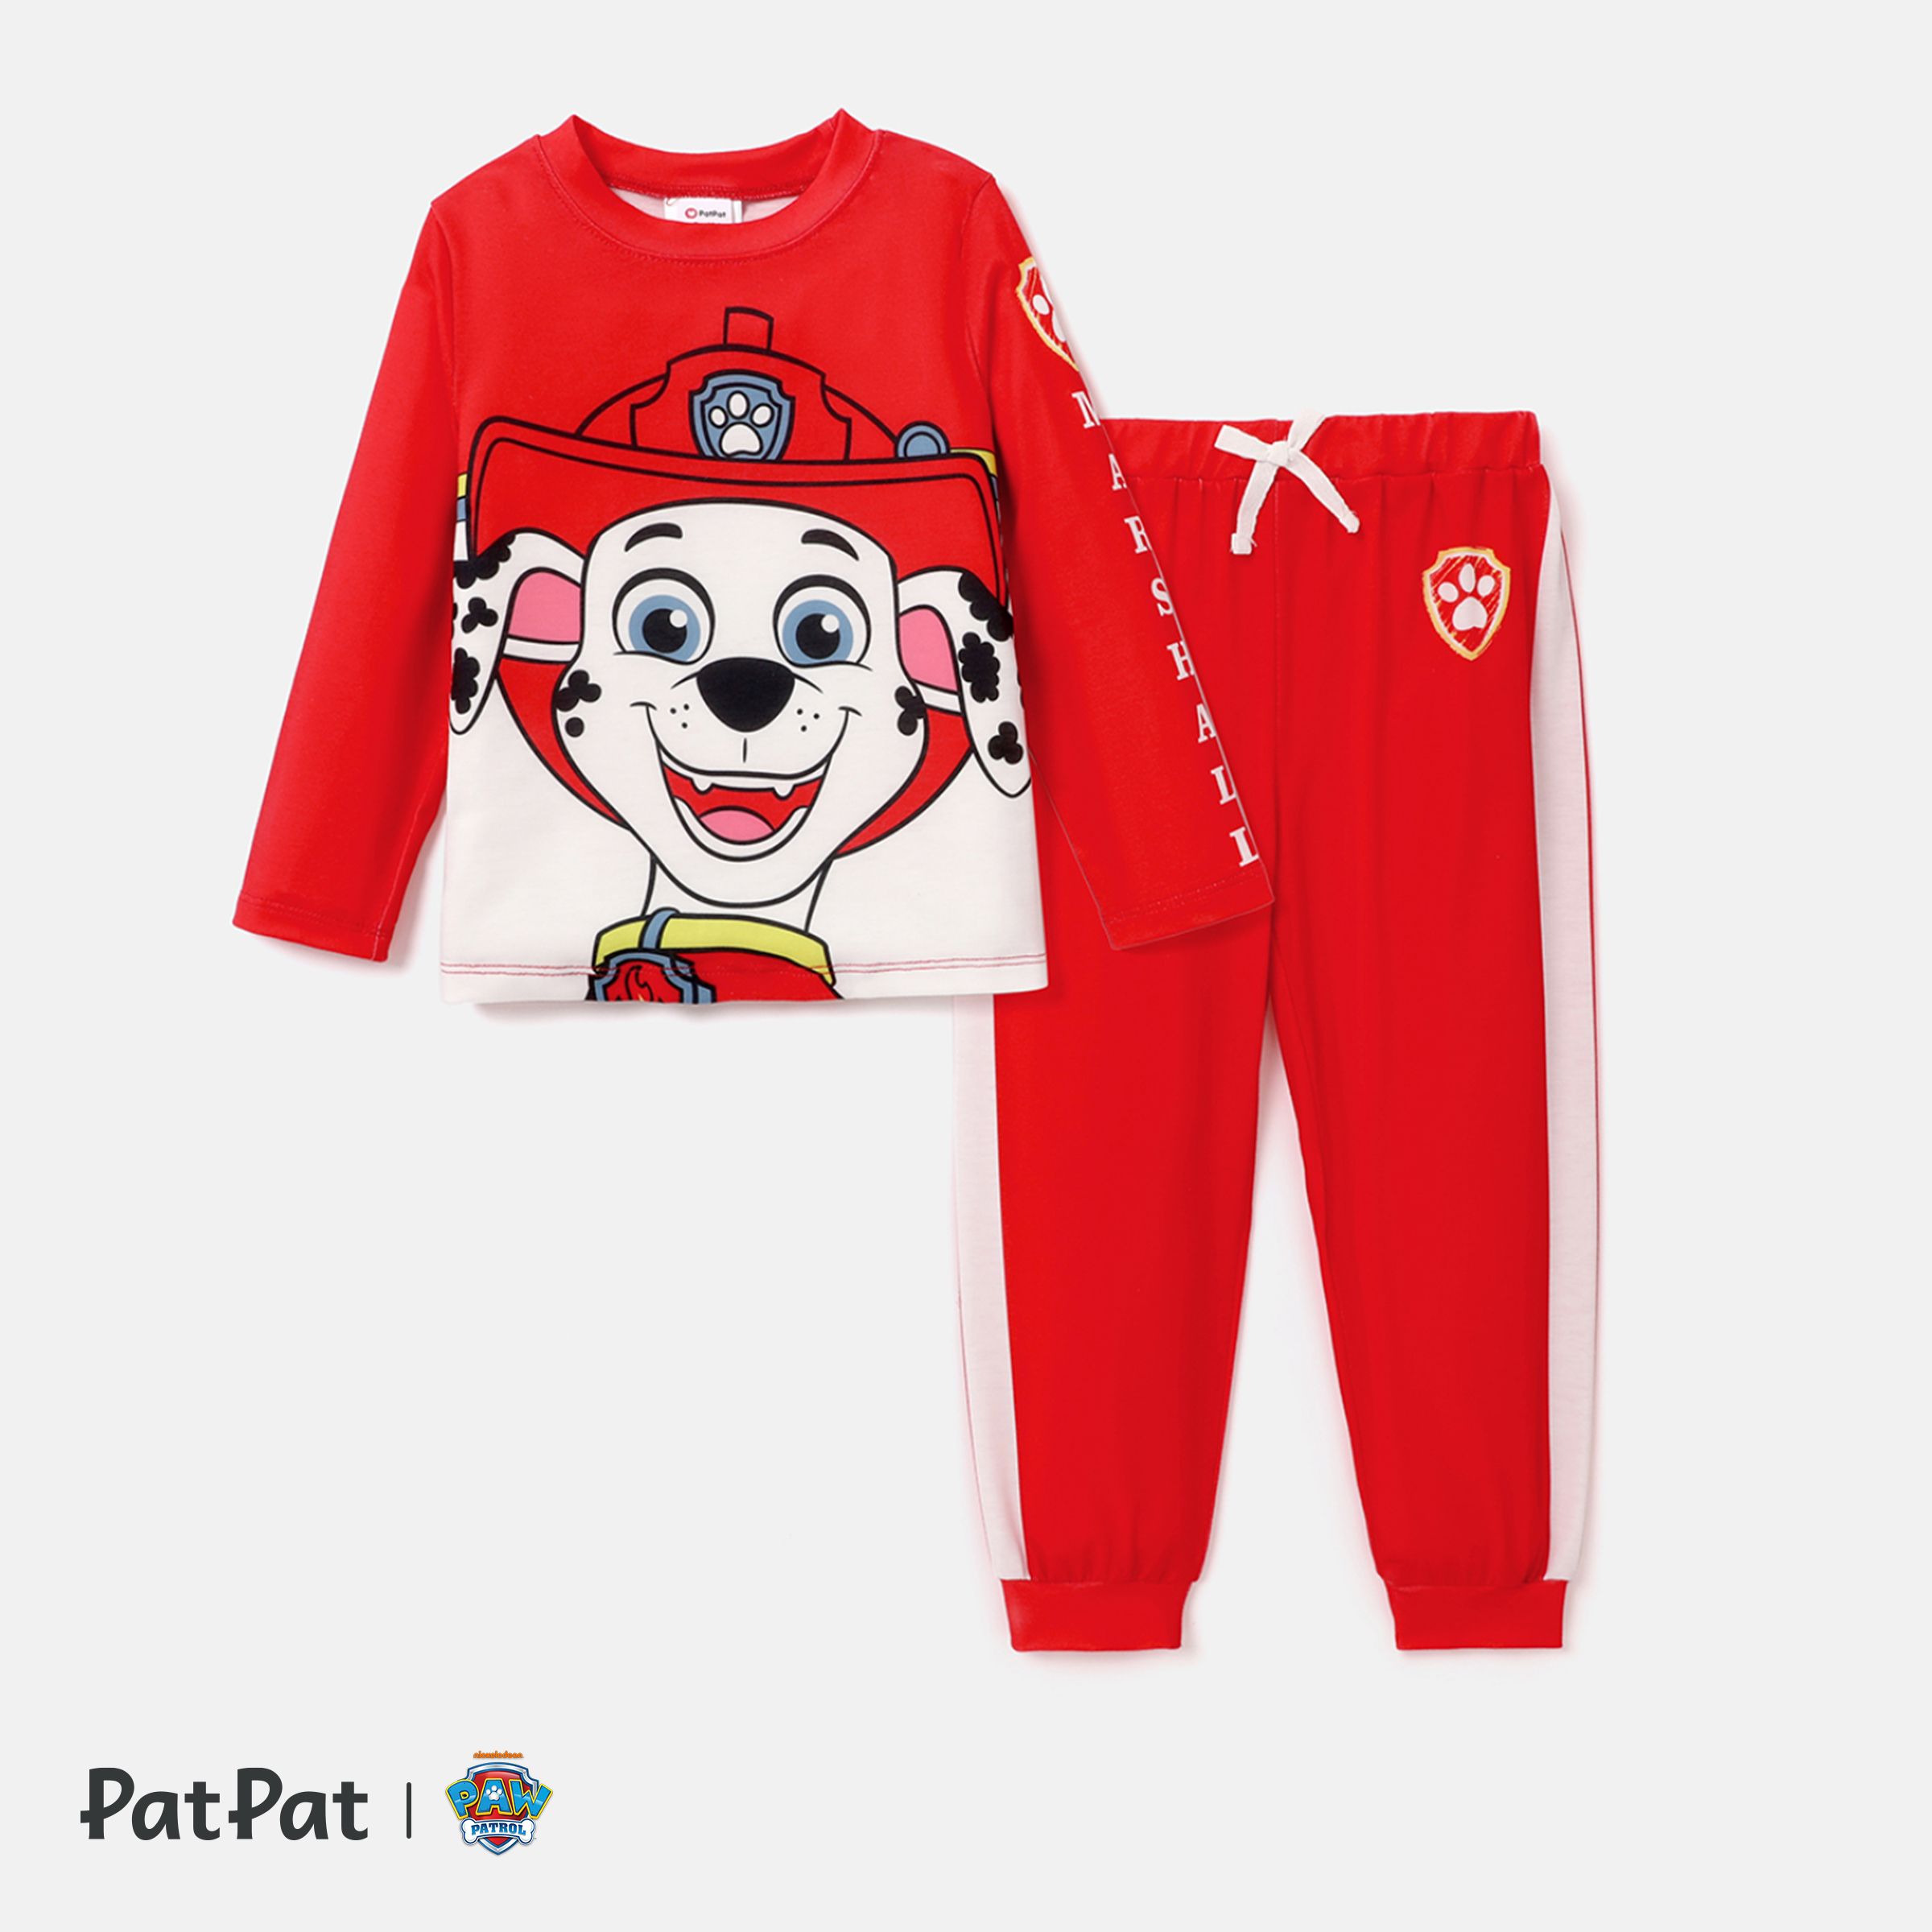 PAW Patrol Toddler Boy/Girl 2-Piece Cartoon Print Top And Pants Set